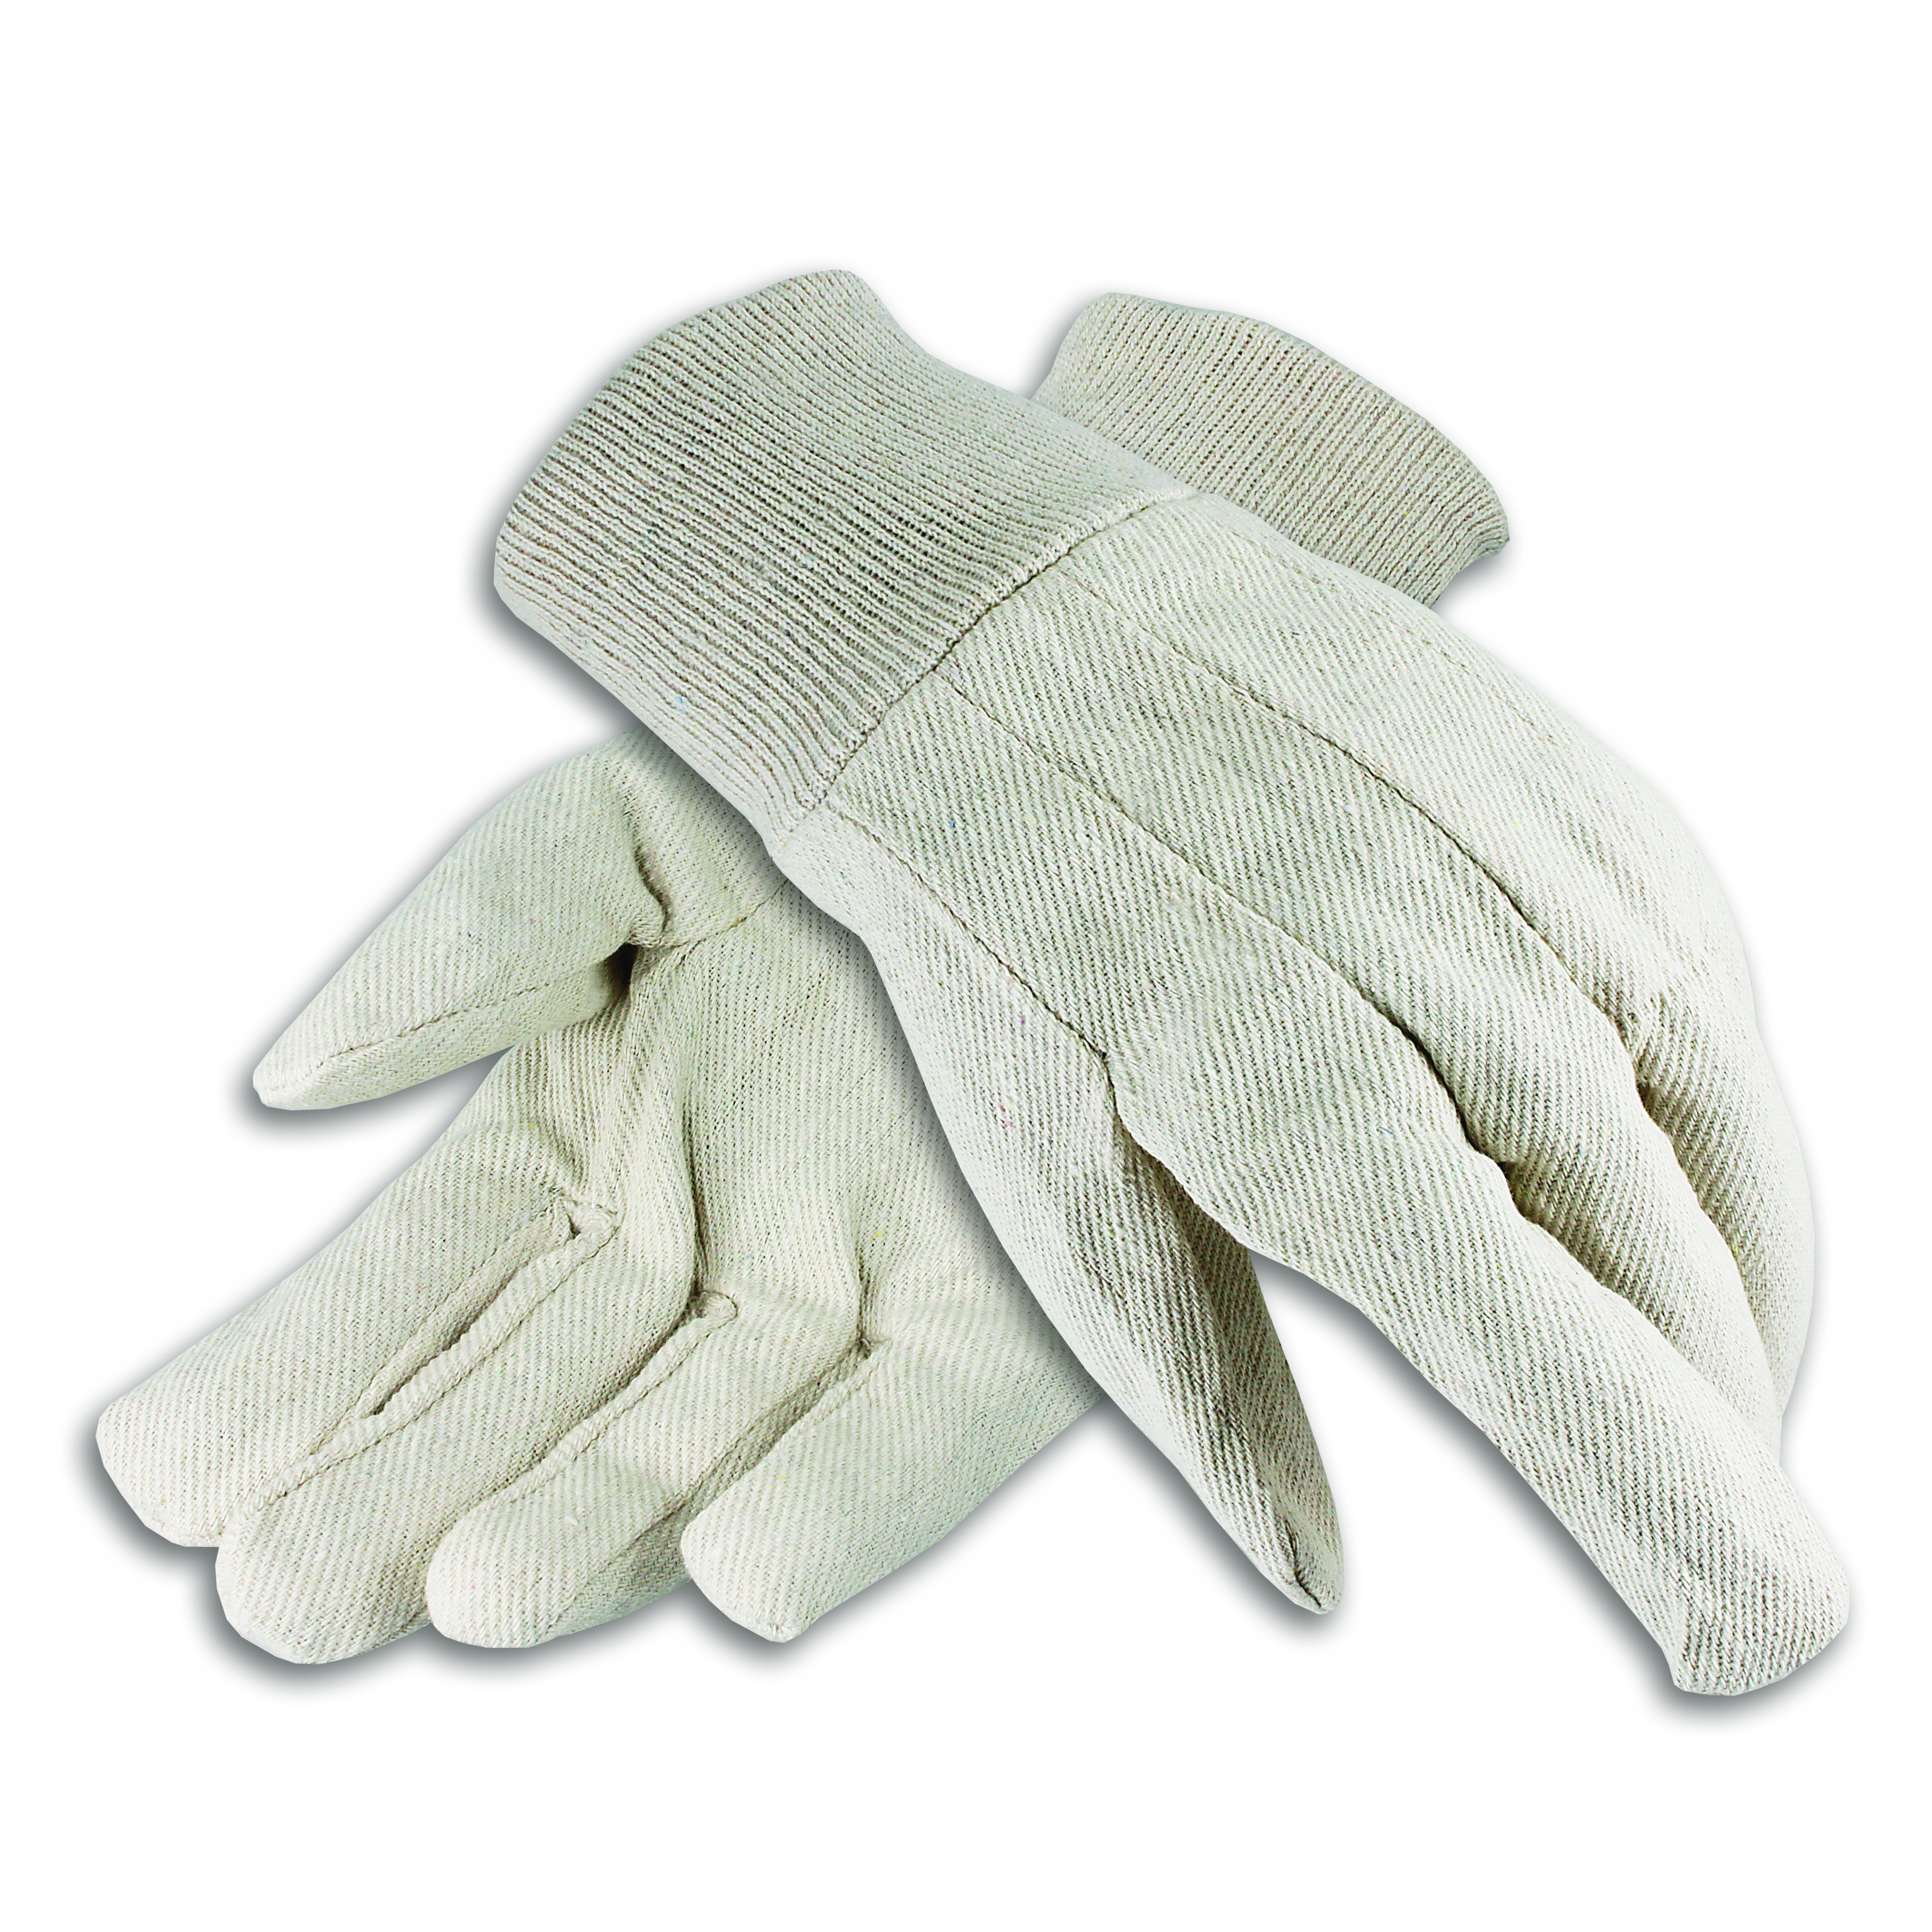 Cotton Canvas Gloves, Men's 12 oz. Knit Wrist